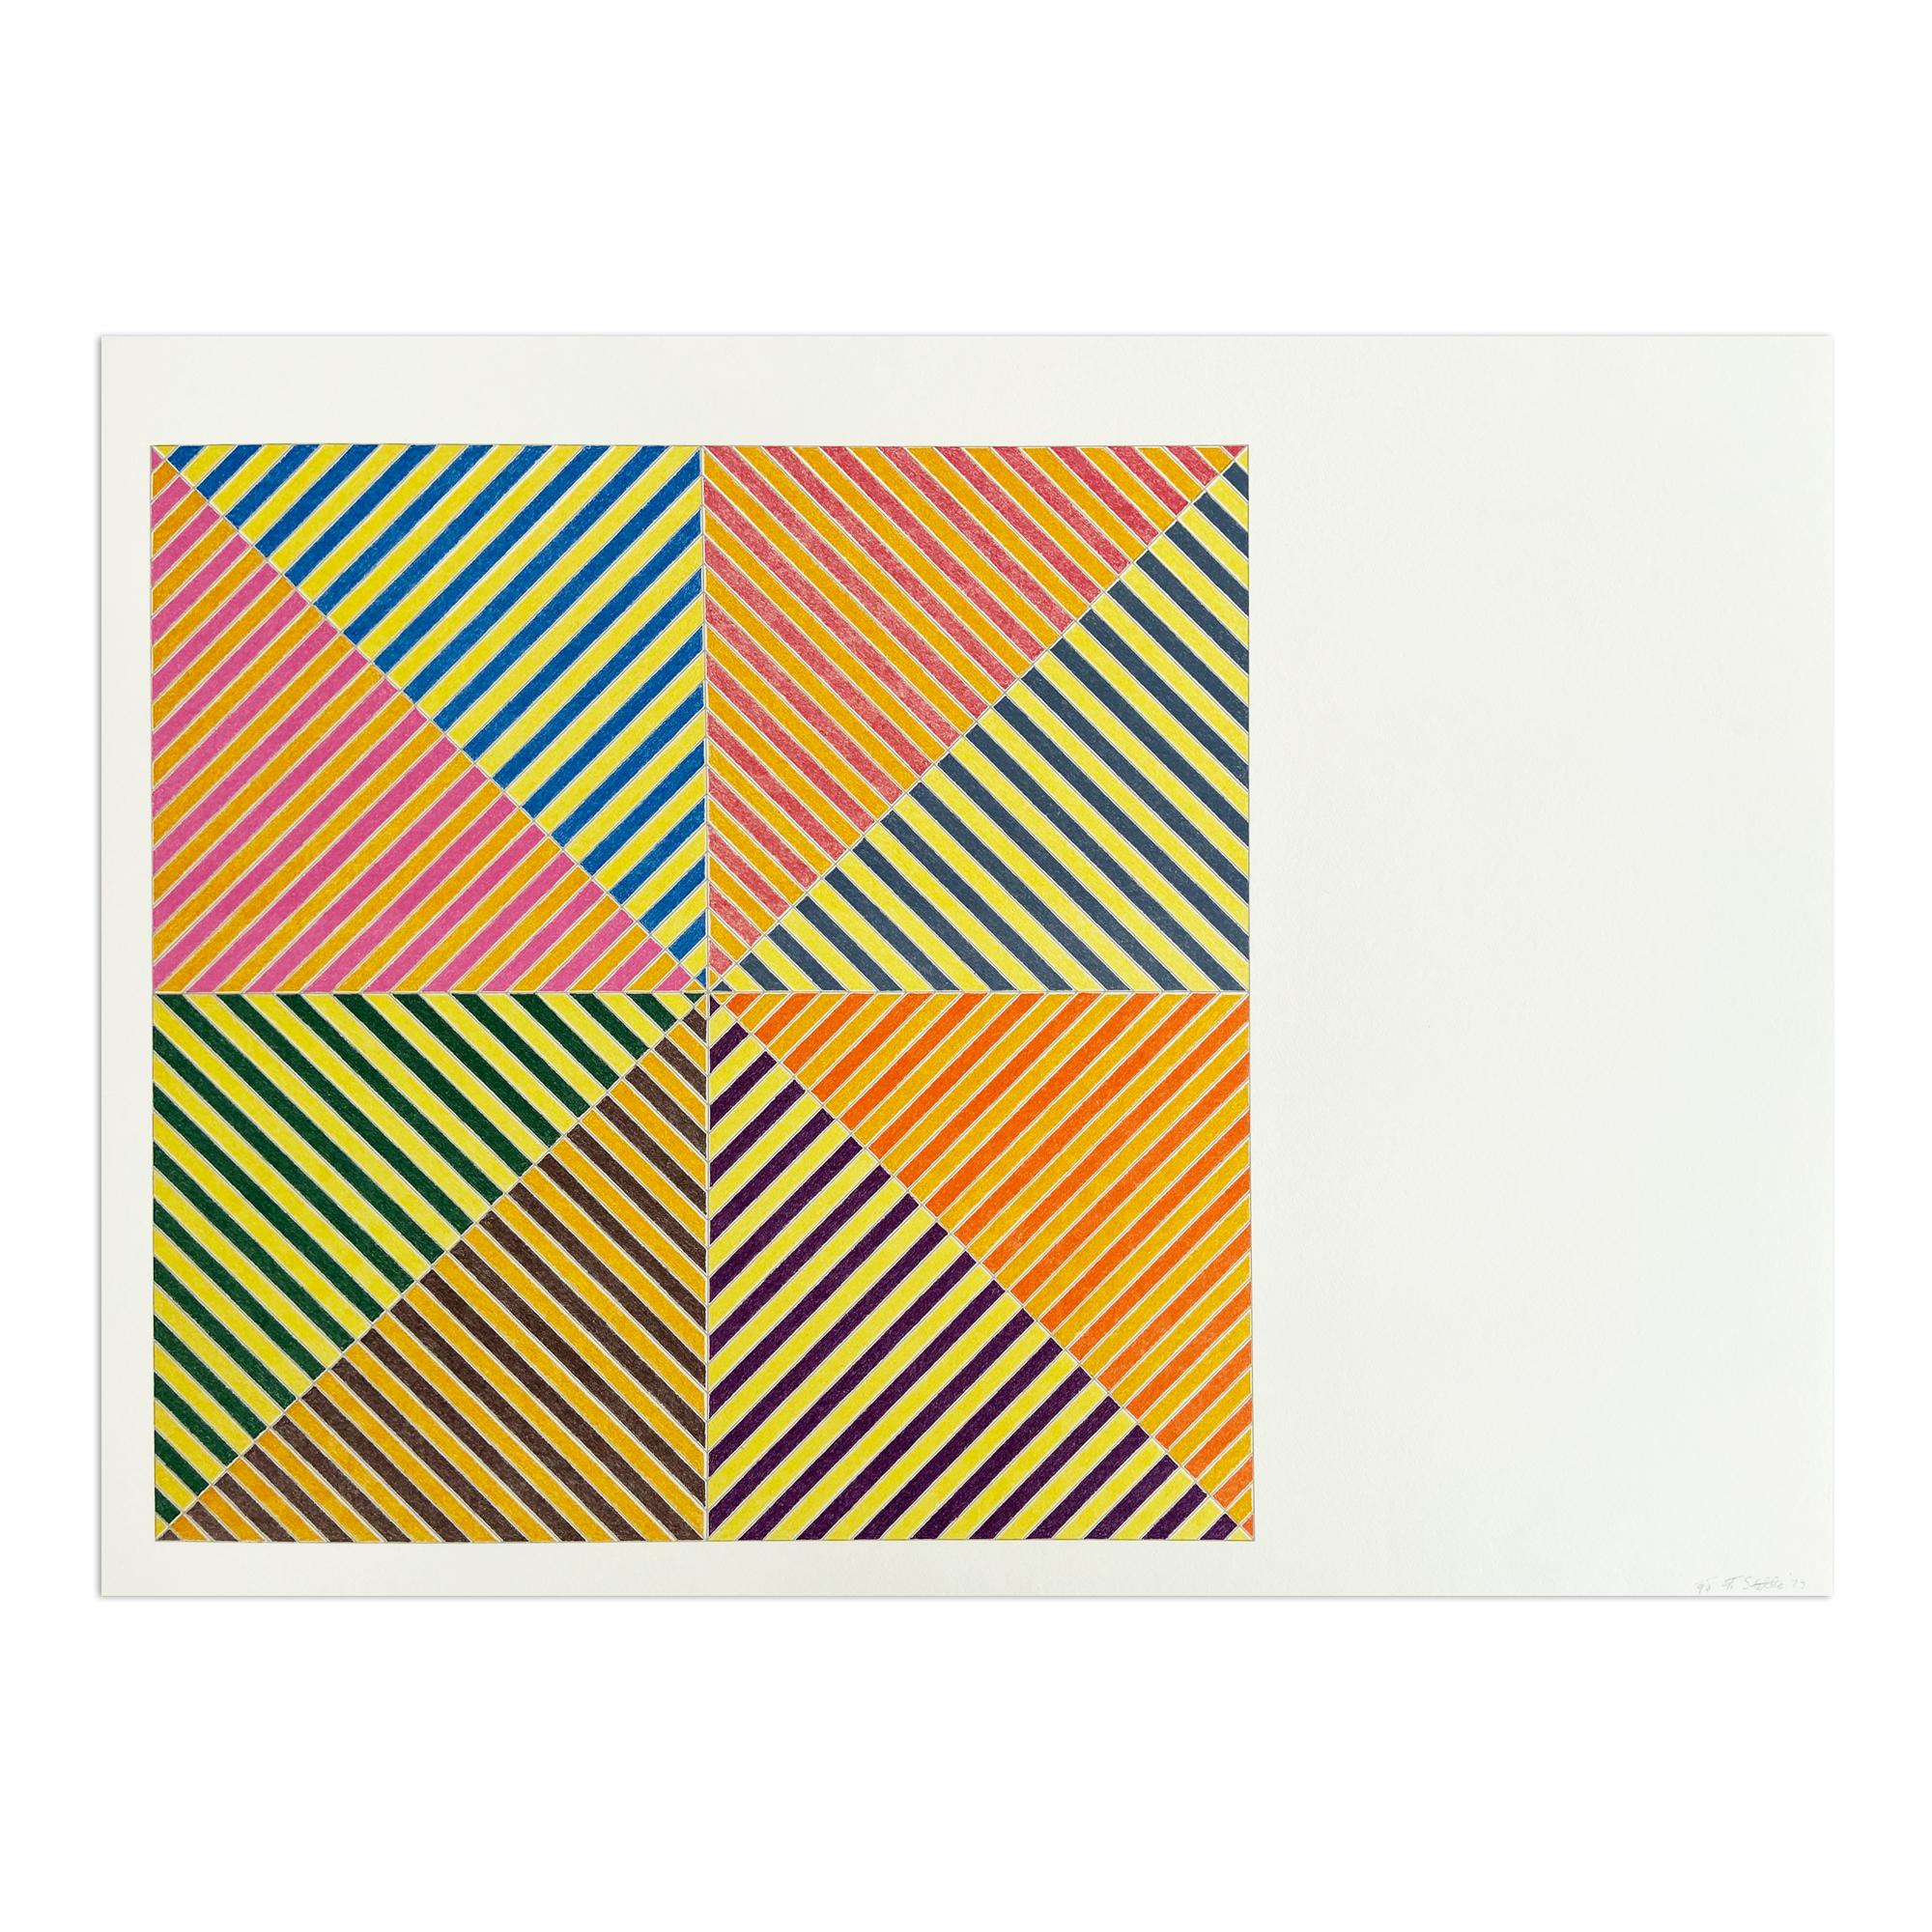 Frank Stella Abstract Print - Sidi Ifni, Sidi Ifni (from Hommage à Picasso), Abstract Geometric, Minimalism